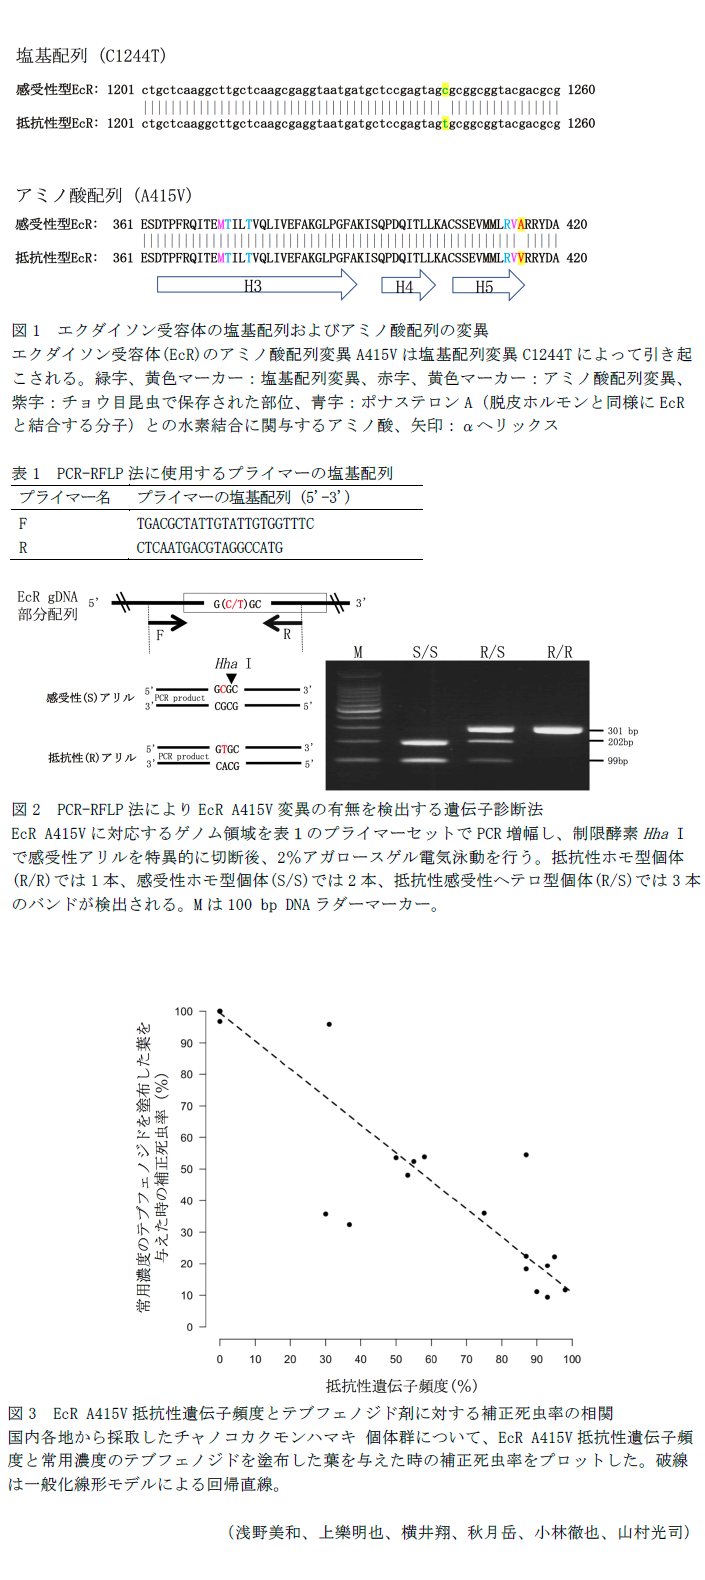 図1 エクダイソン受容体の塩基配列およびアミノ酸配列の変異,表1 PCR-RFLP法に使用するプライマーの塩基配列,図2 PCR-RFLP法によりEcR A415V変異の有無を検出する遺伝子診断法,図3 EcR A415V抵抗性遺伝子頻度とテブフェノジド剤に対する補正死虫率の相関